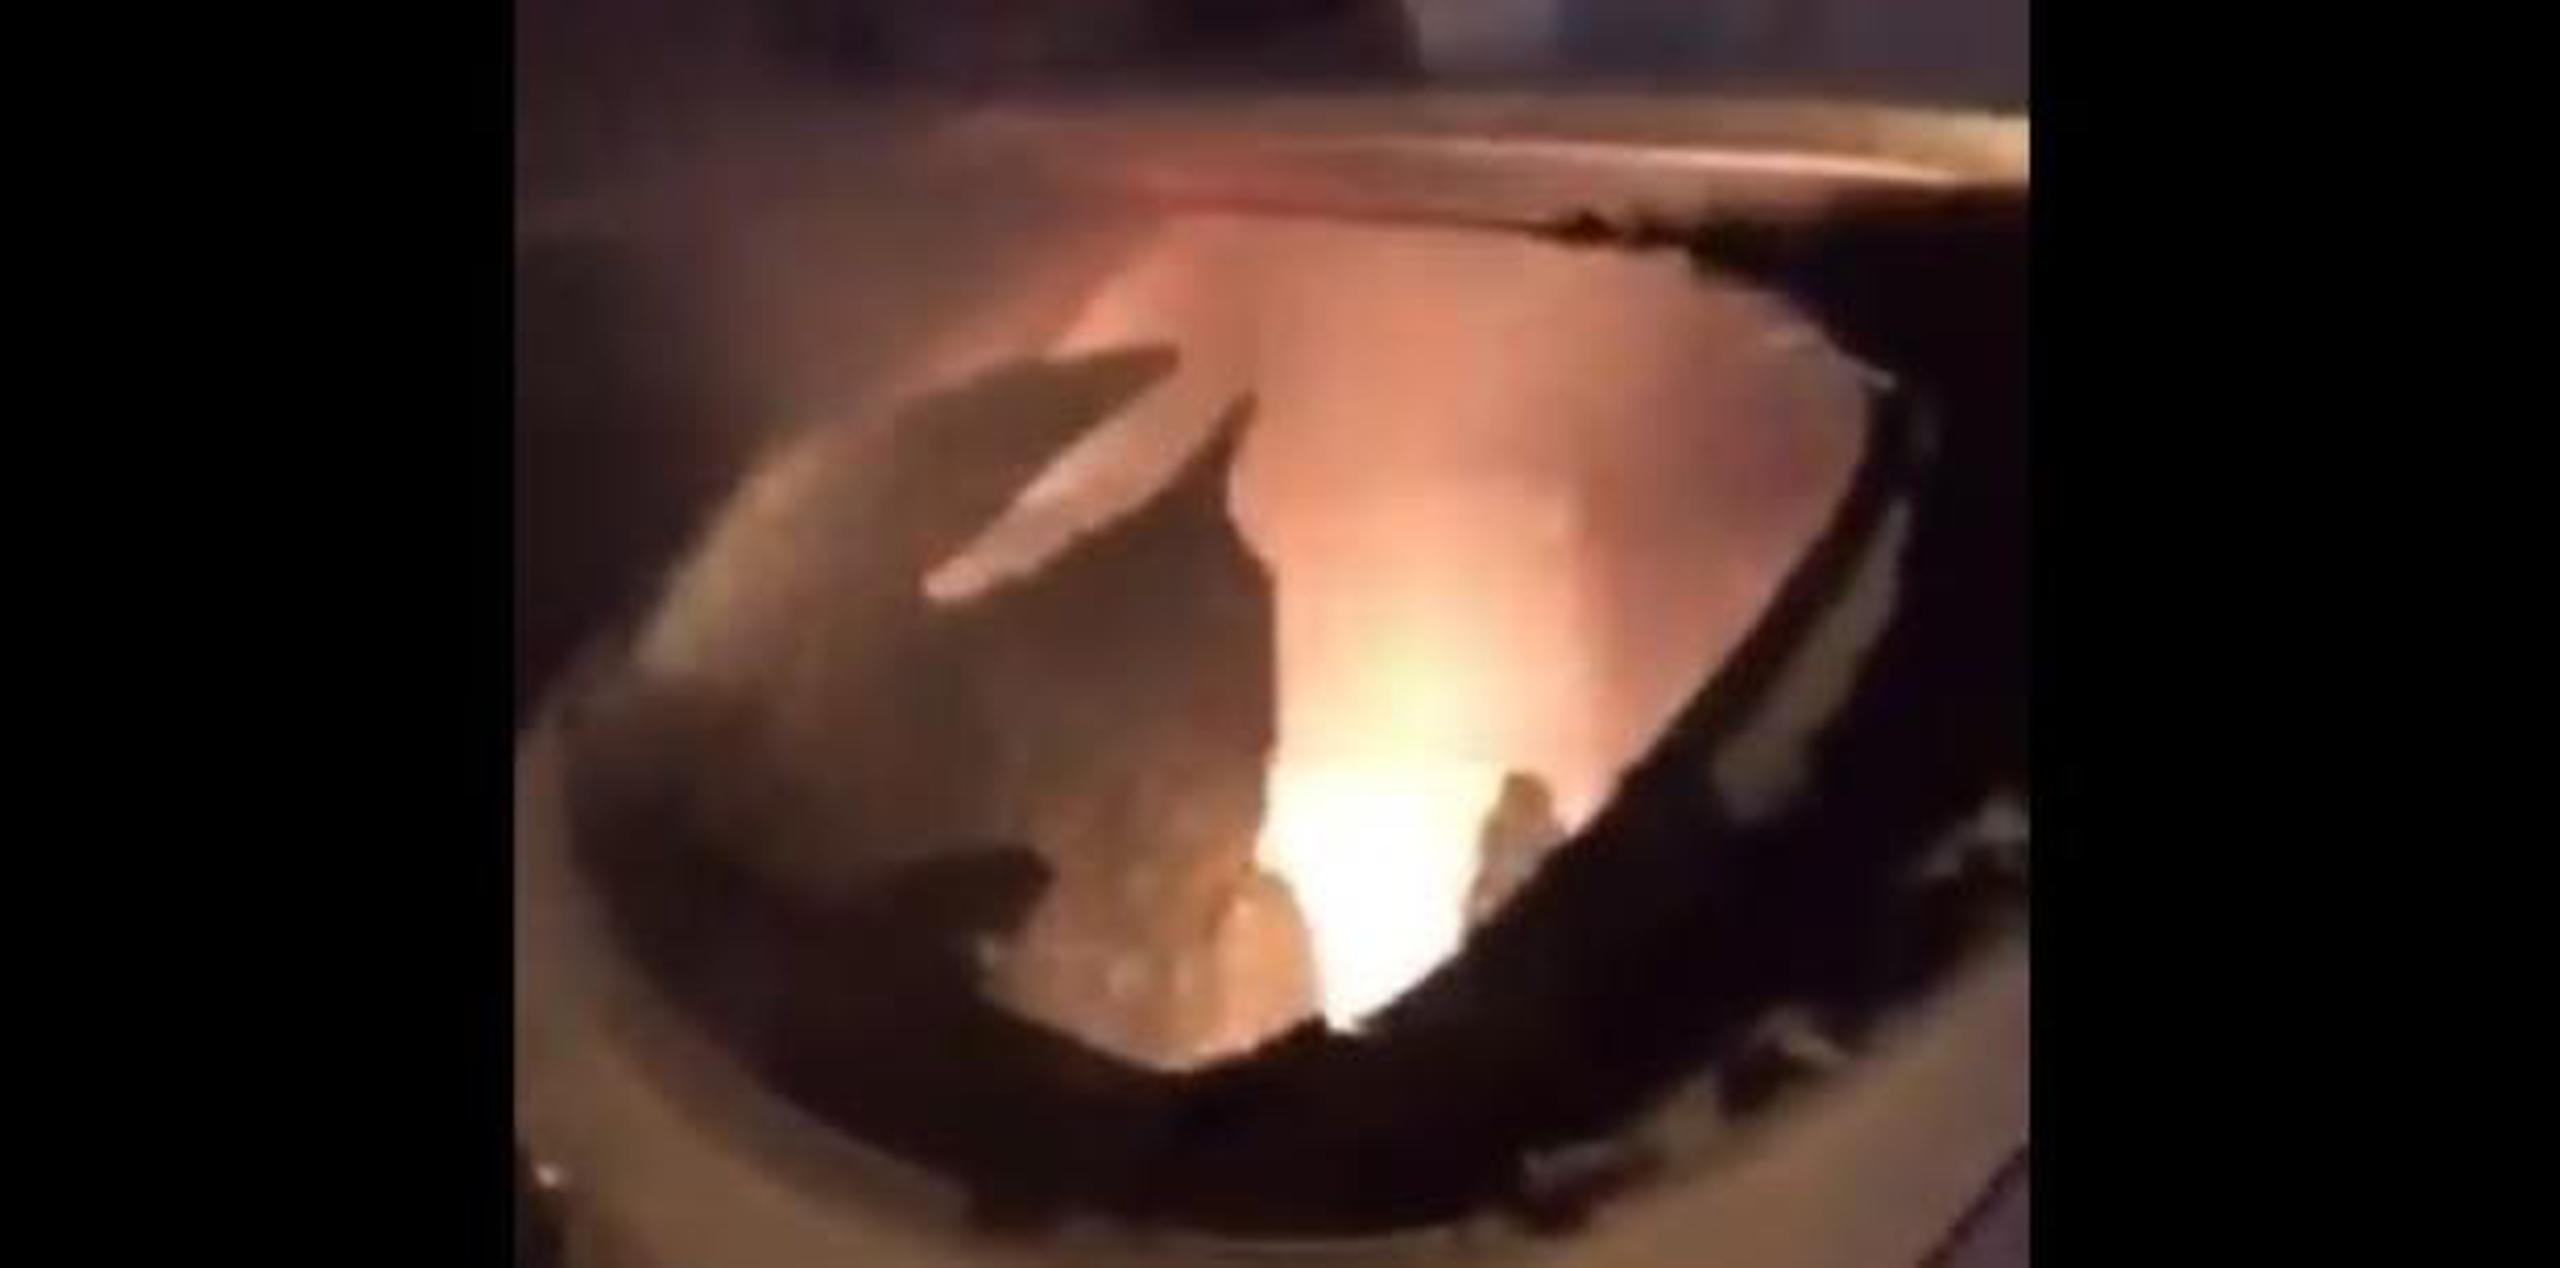 La parte posterior del vehículo comenzó a quemarse tan pronto fue impactada. (Twitter)